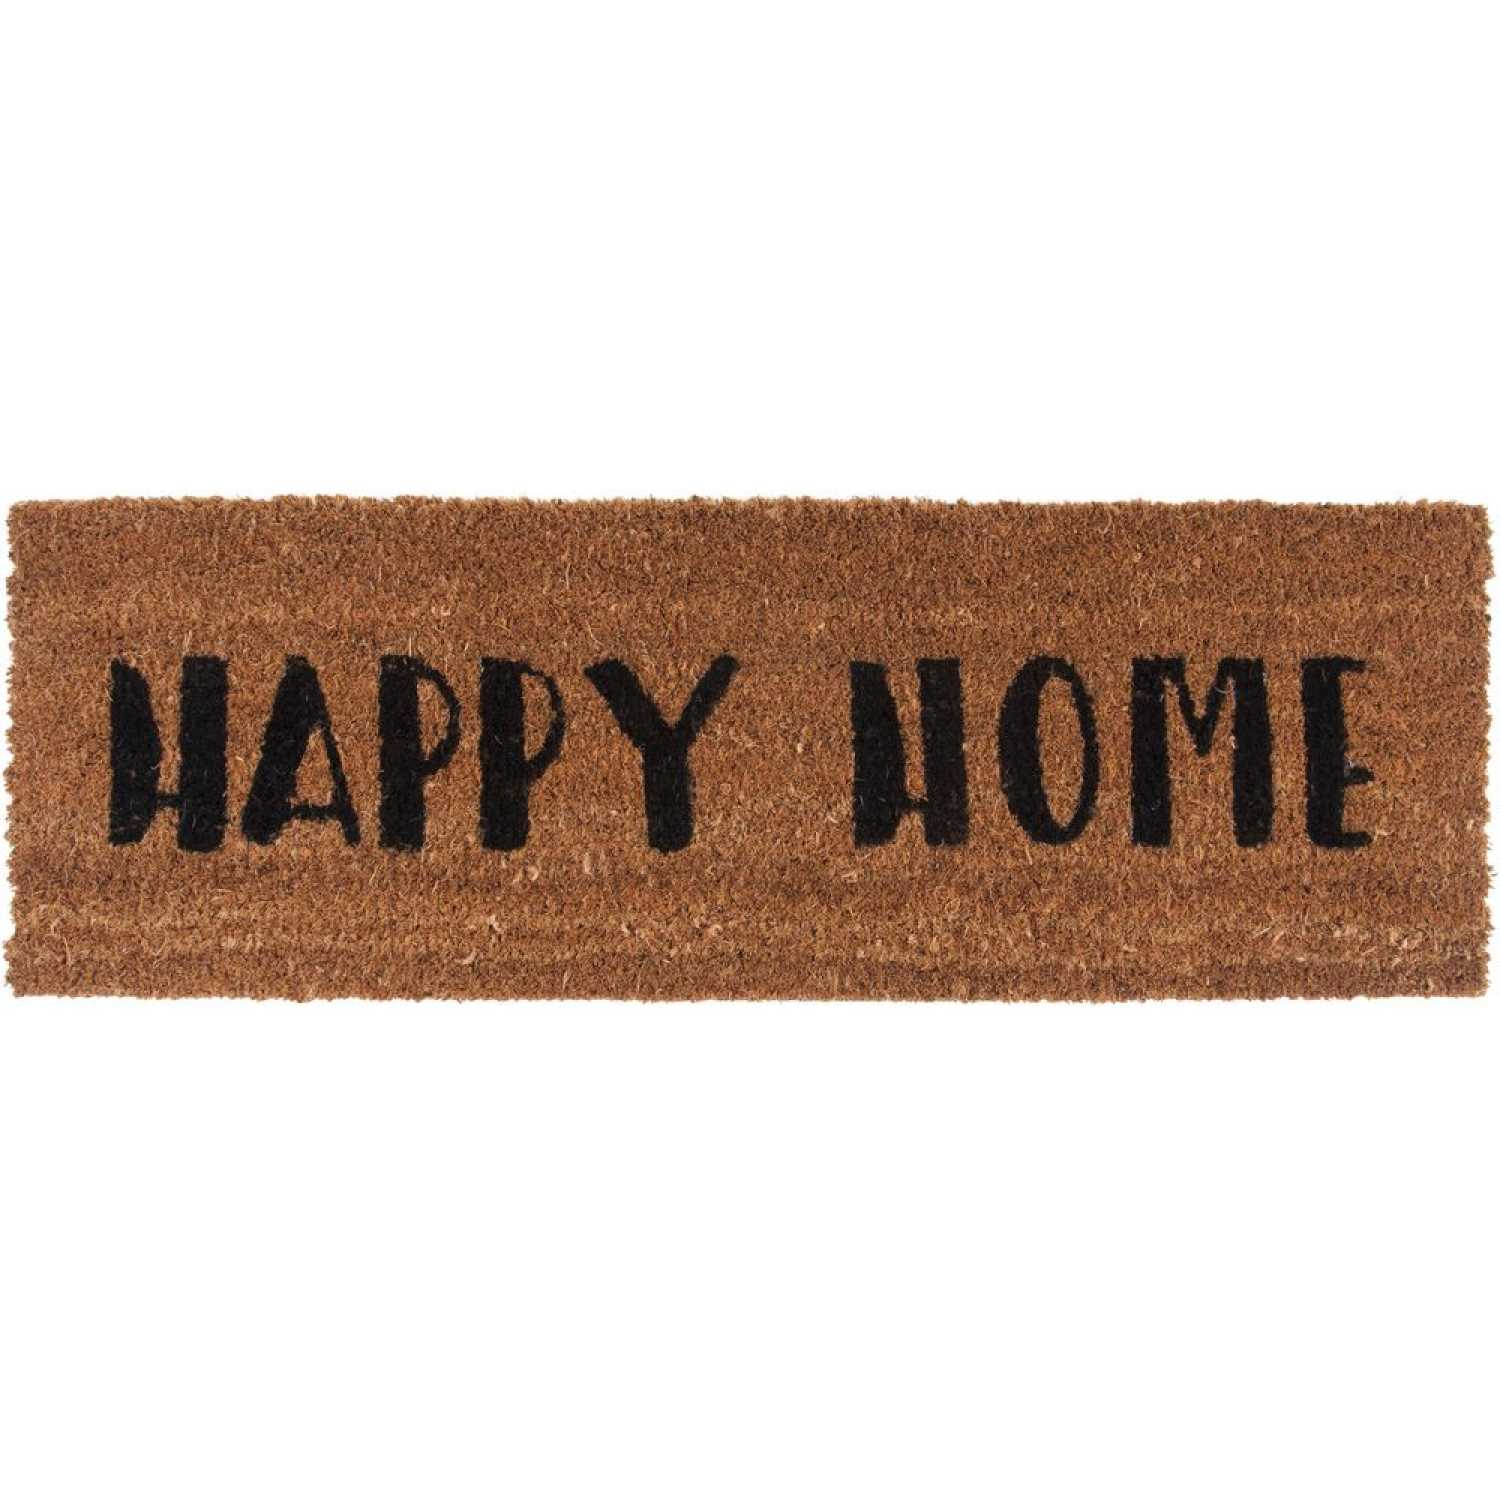 Present Time Happy Home Doormat - Black